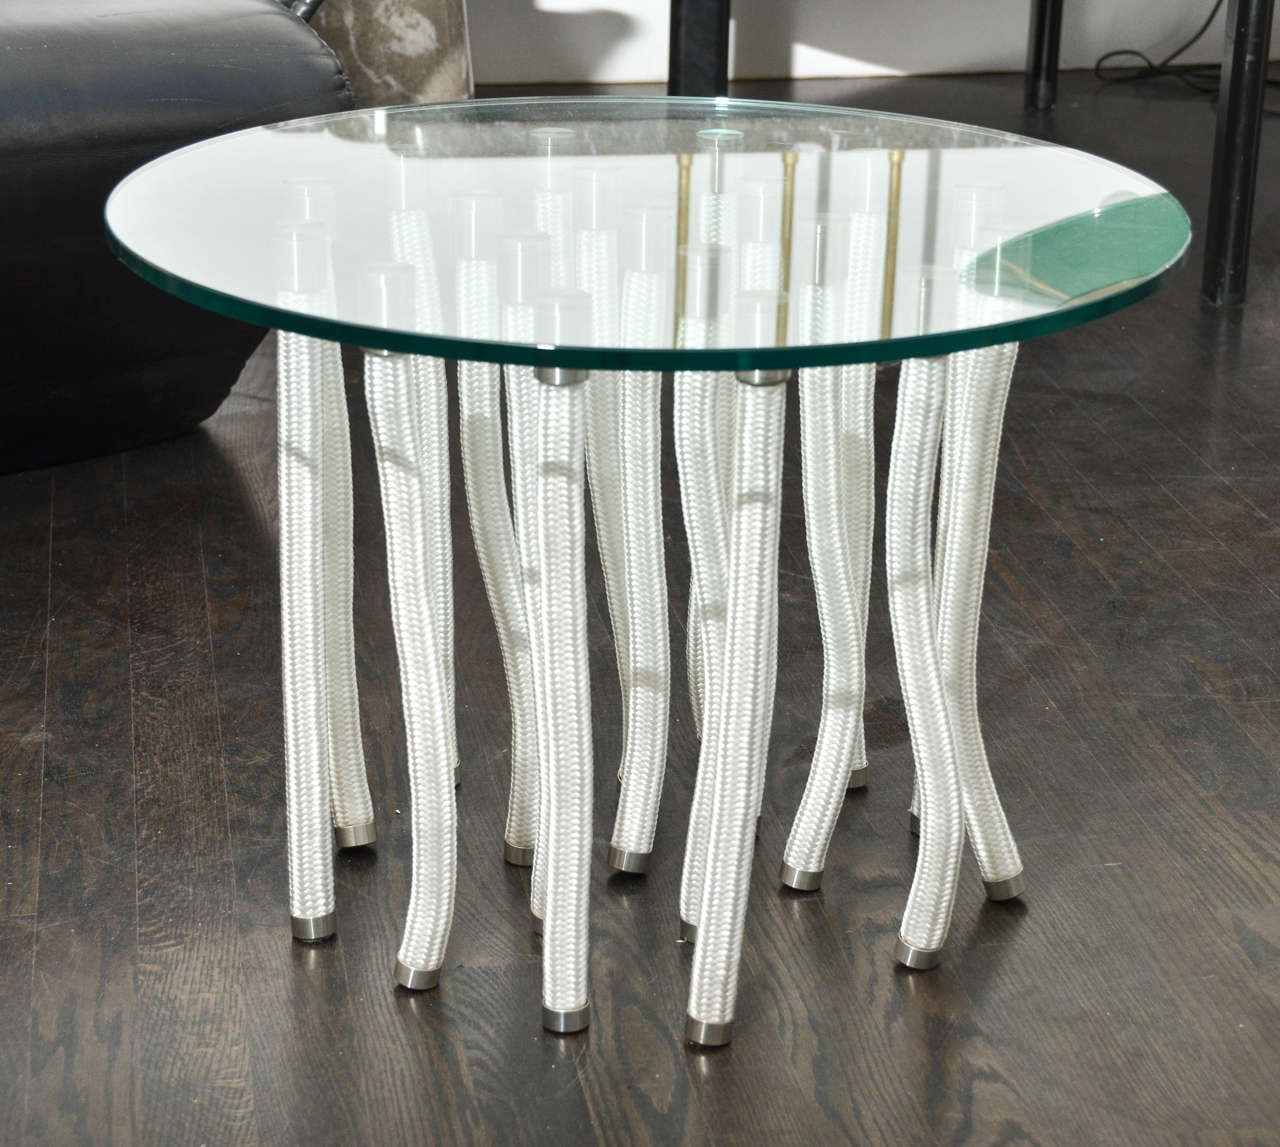 Round glass coffee table by Fabio Novembre.